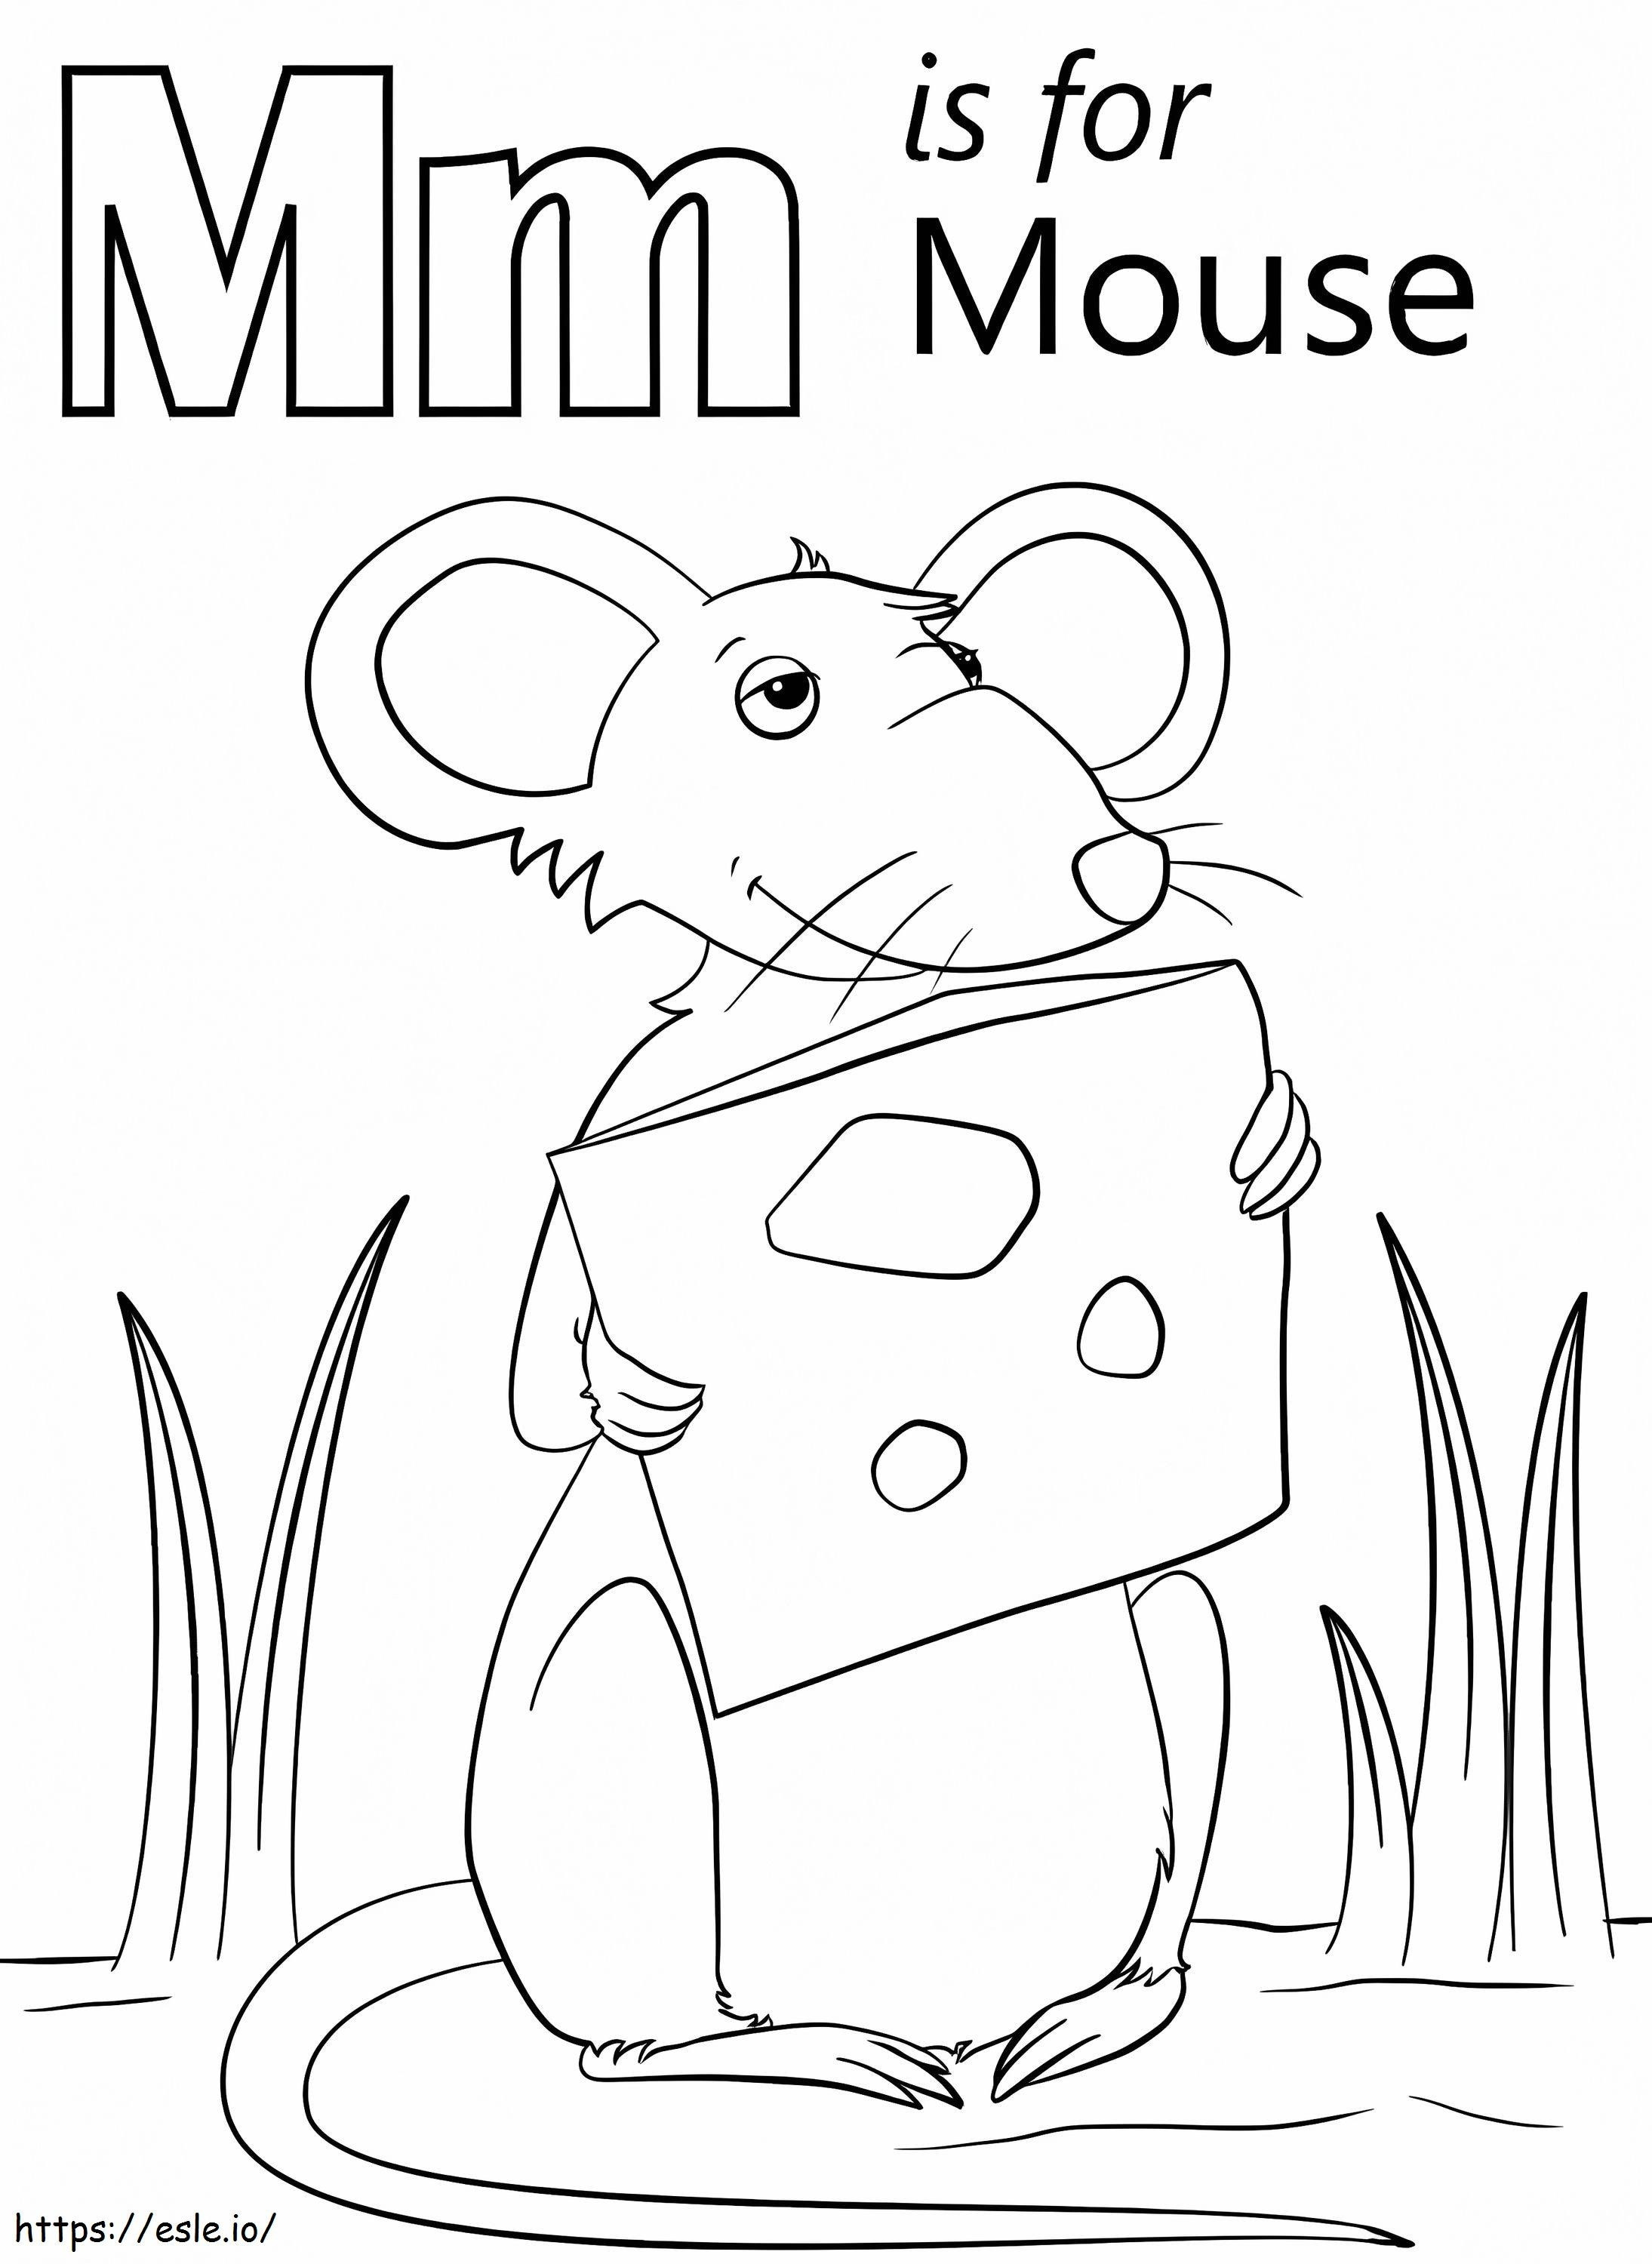 Mausbuchstabe M ausmalbilder